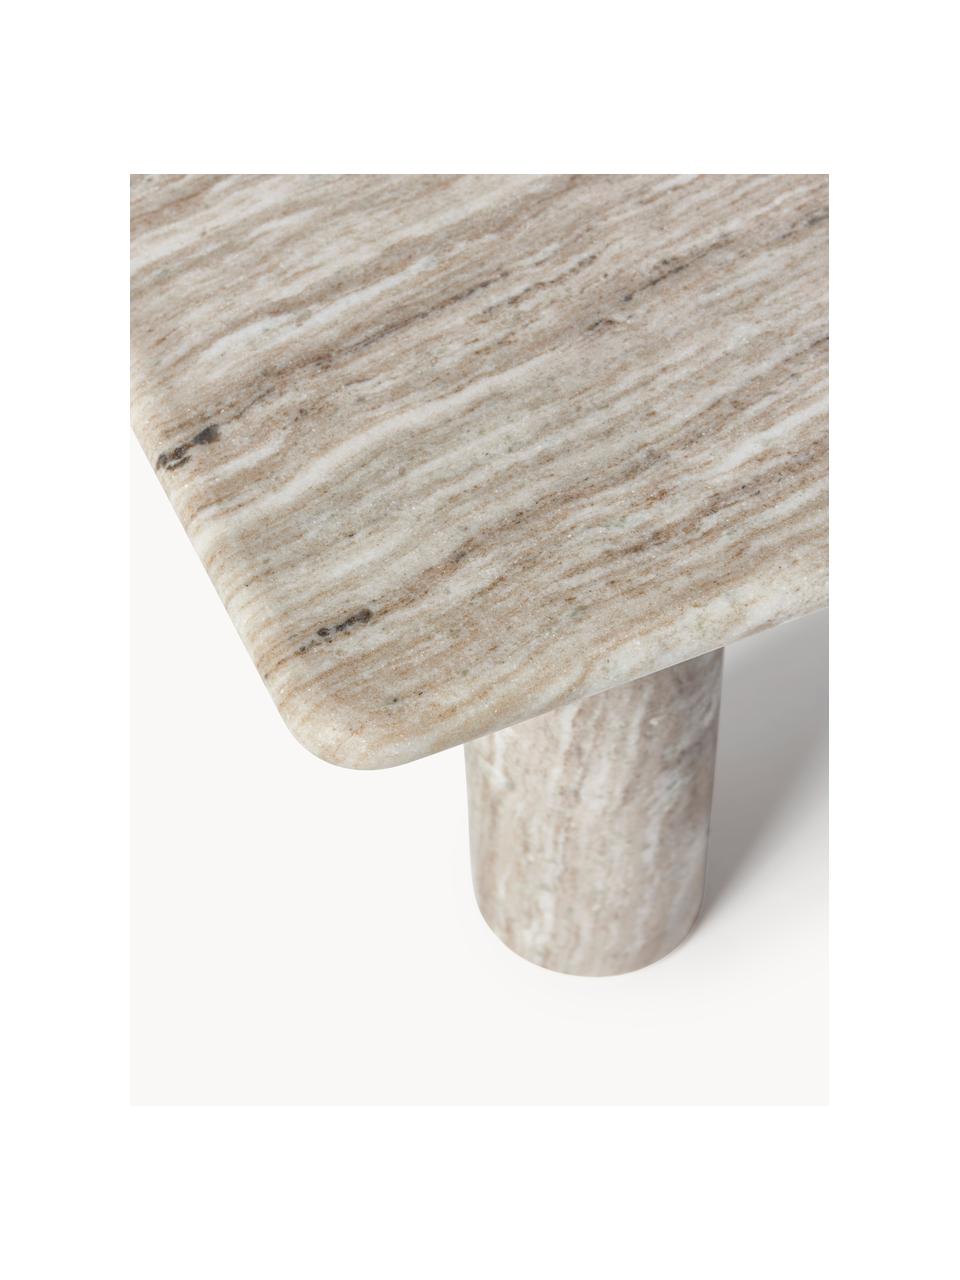 Mramorový konferenční stolek Mabel, Mramor, Béžová, mramorovaná, Š 100 cm, V 50 cm